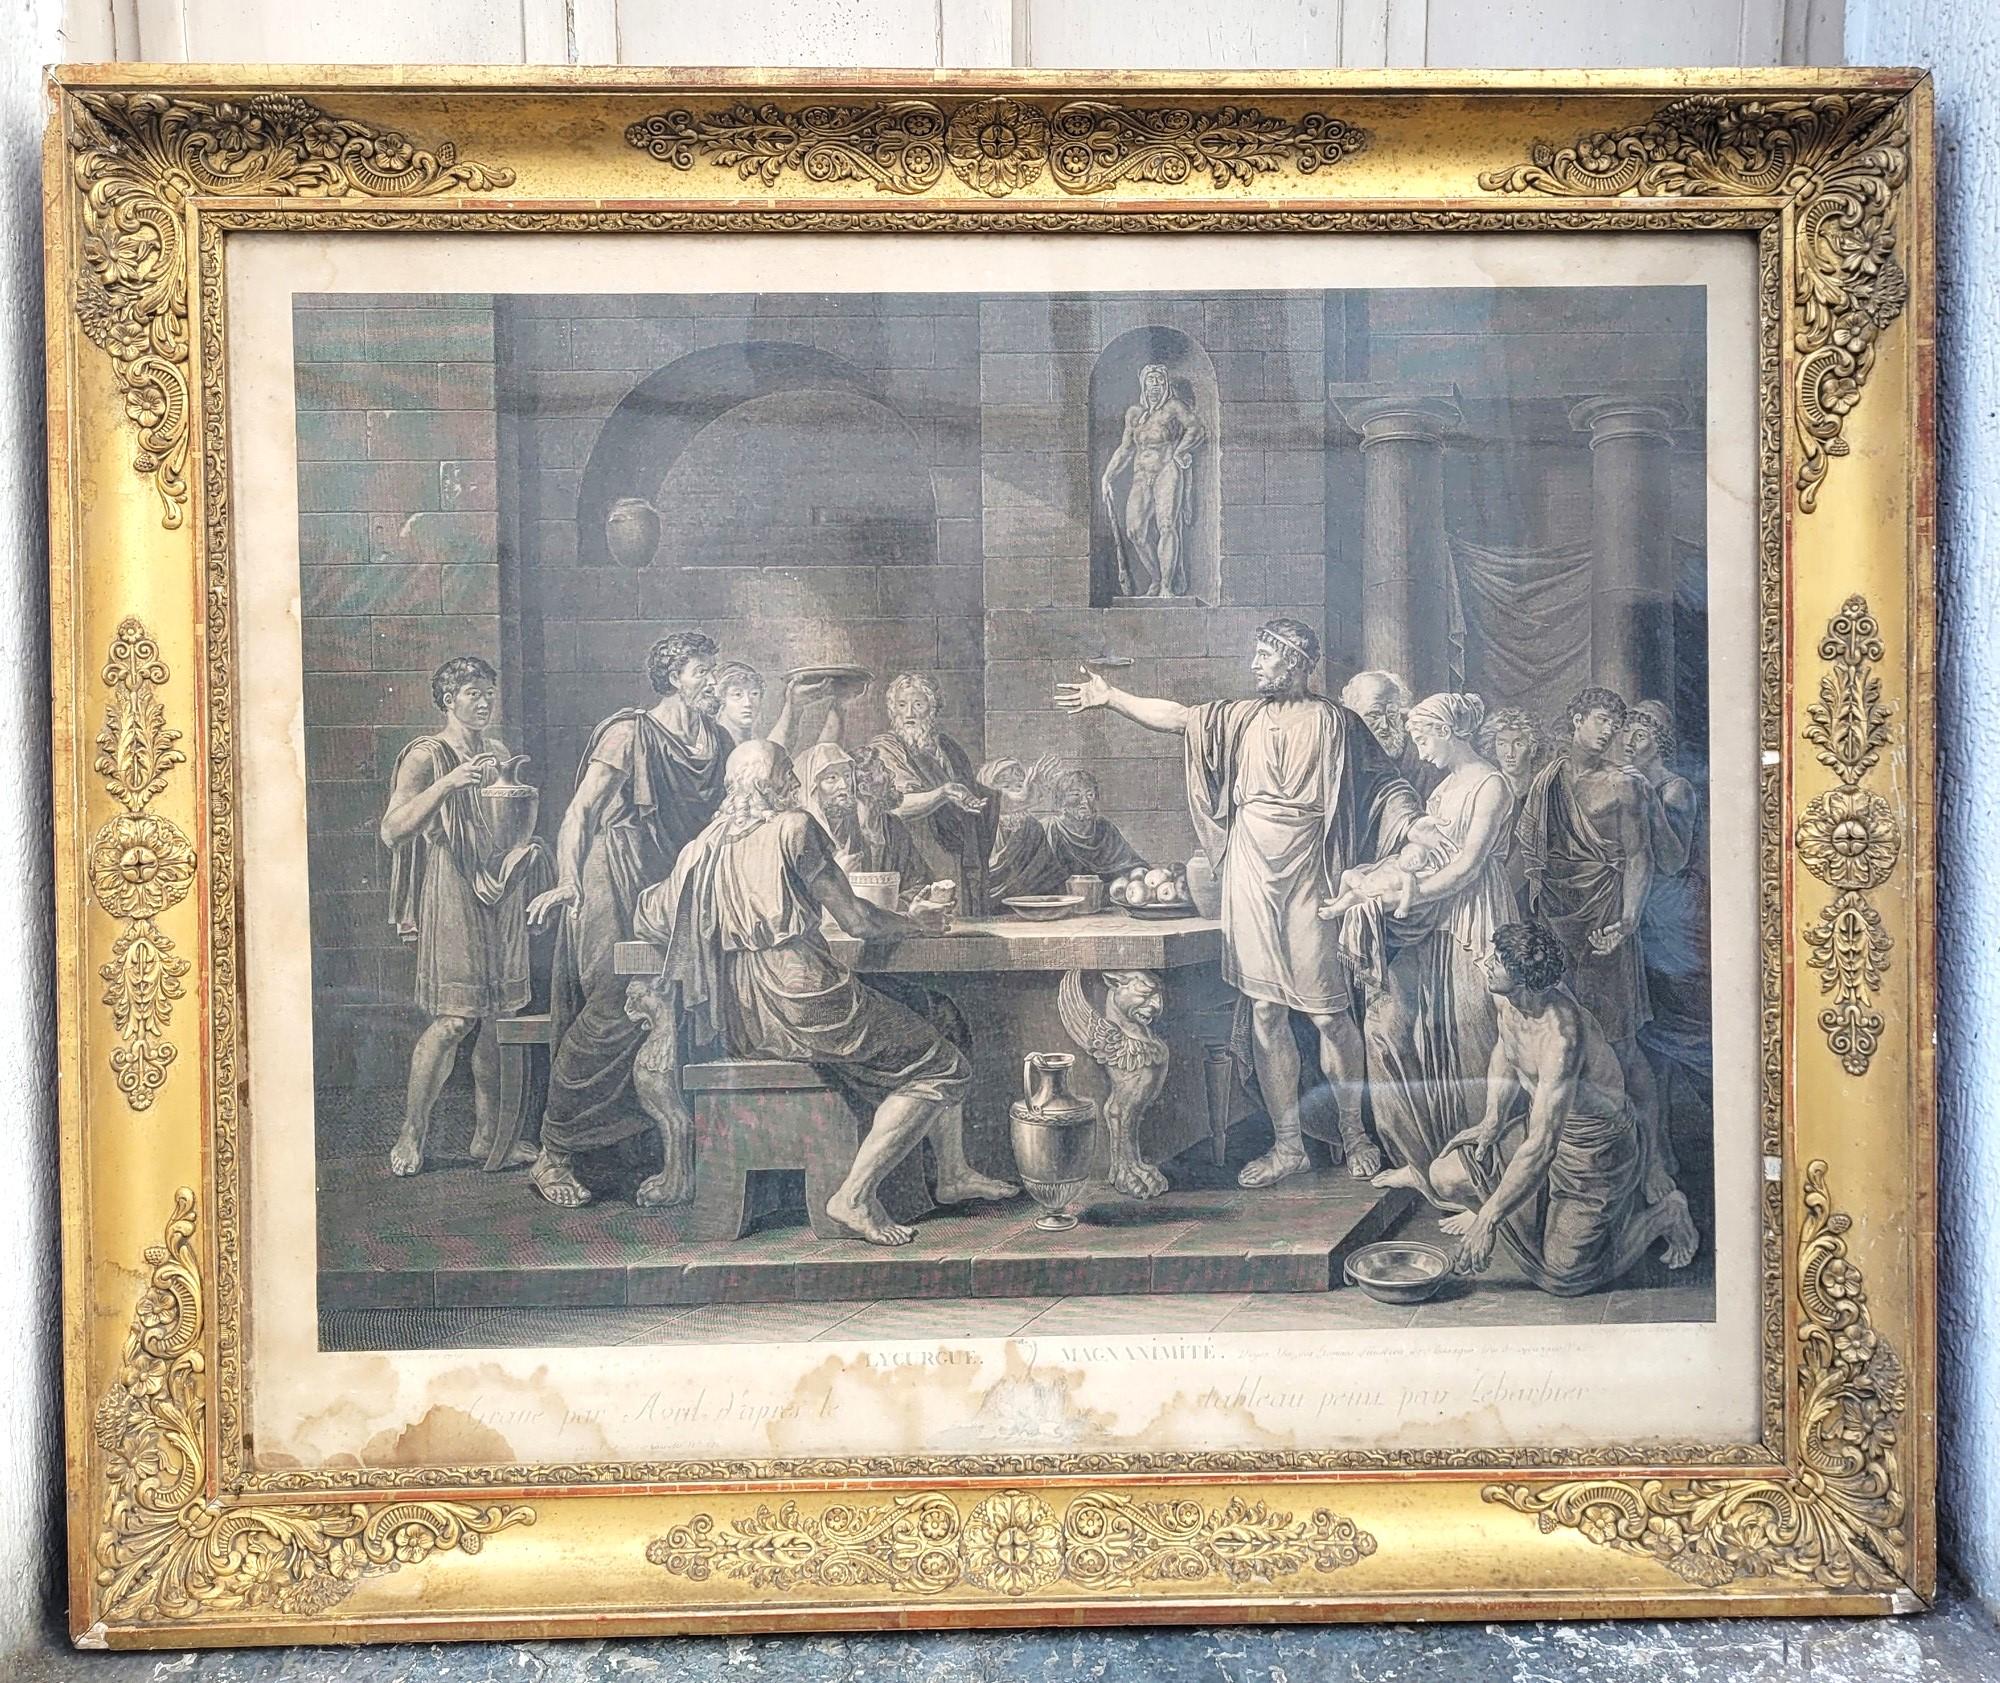 Zwei gerahmte neoklassizistische Stiche nach Gemälden von Jean Jacques François Le Barbier (1738 - 1826) und Stichen von Jean-Jacques Avril (1744-1831), datiert 1789 für das Gemälde und 1791 für den Kupferstich

Die dargestellten Szenen sind:
-